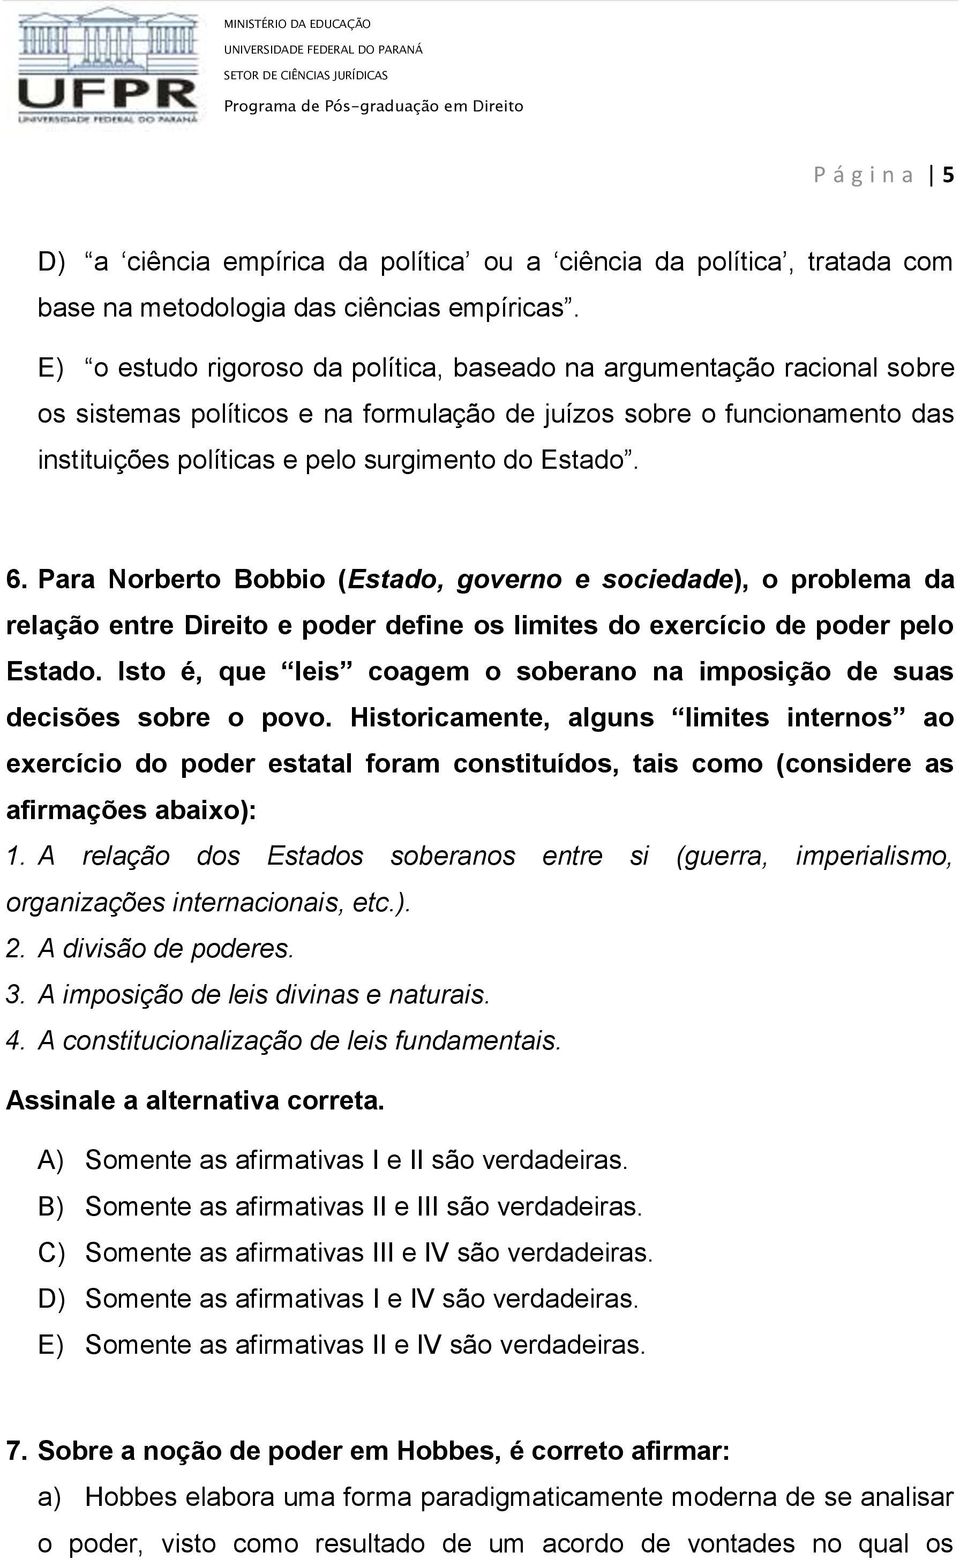 6. Para Norberto Bobbio (Estado, governo e sociedade), o problema da relação entre Direito e poder define os limites do exercício de poder pelo Estado.